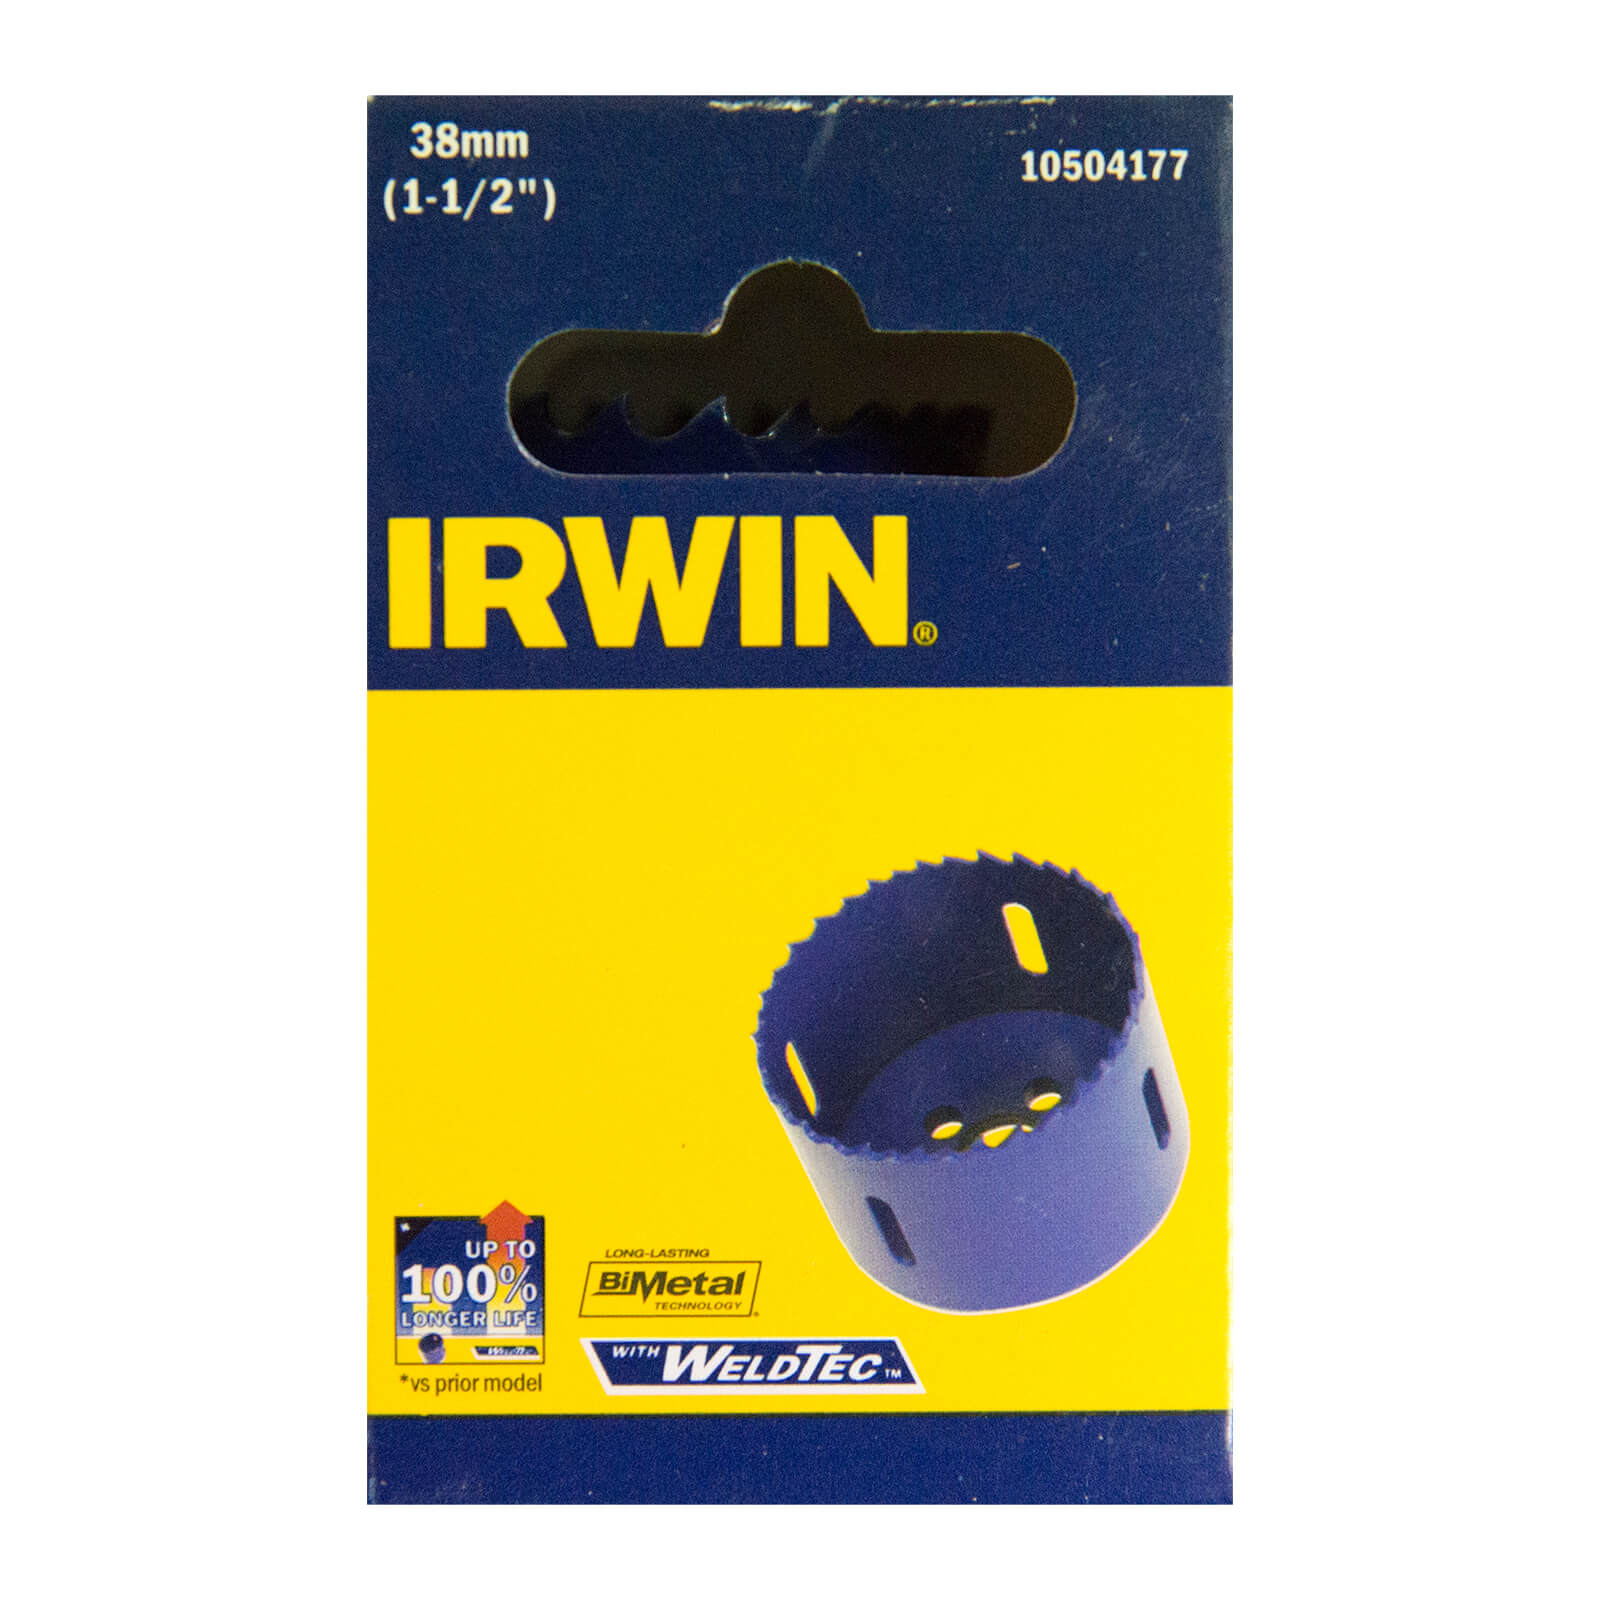 IRWIN Bi-Metal Hole Saw - 38mm